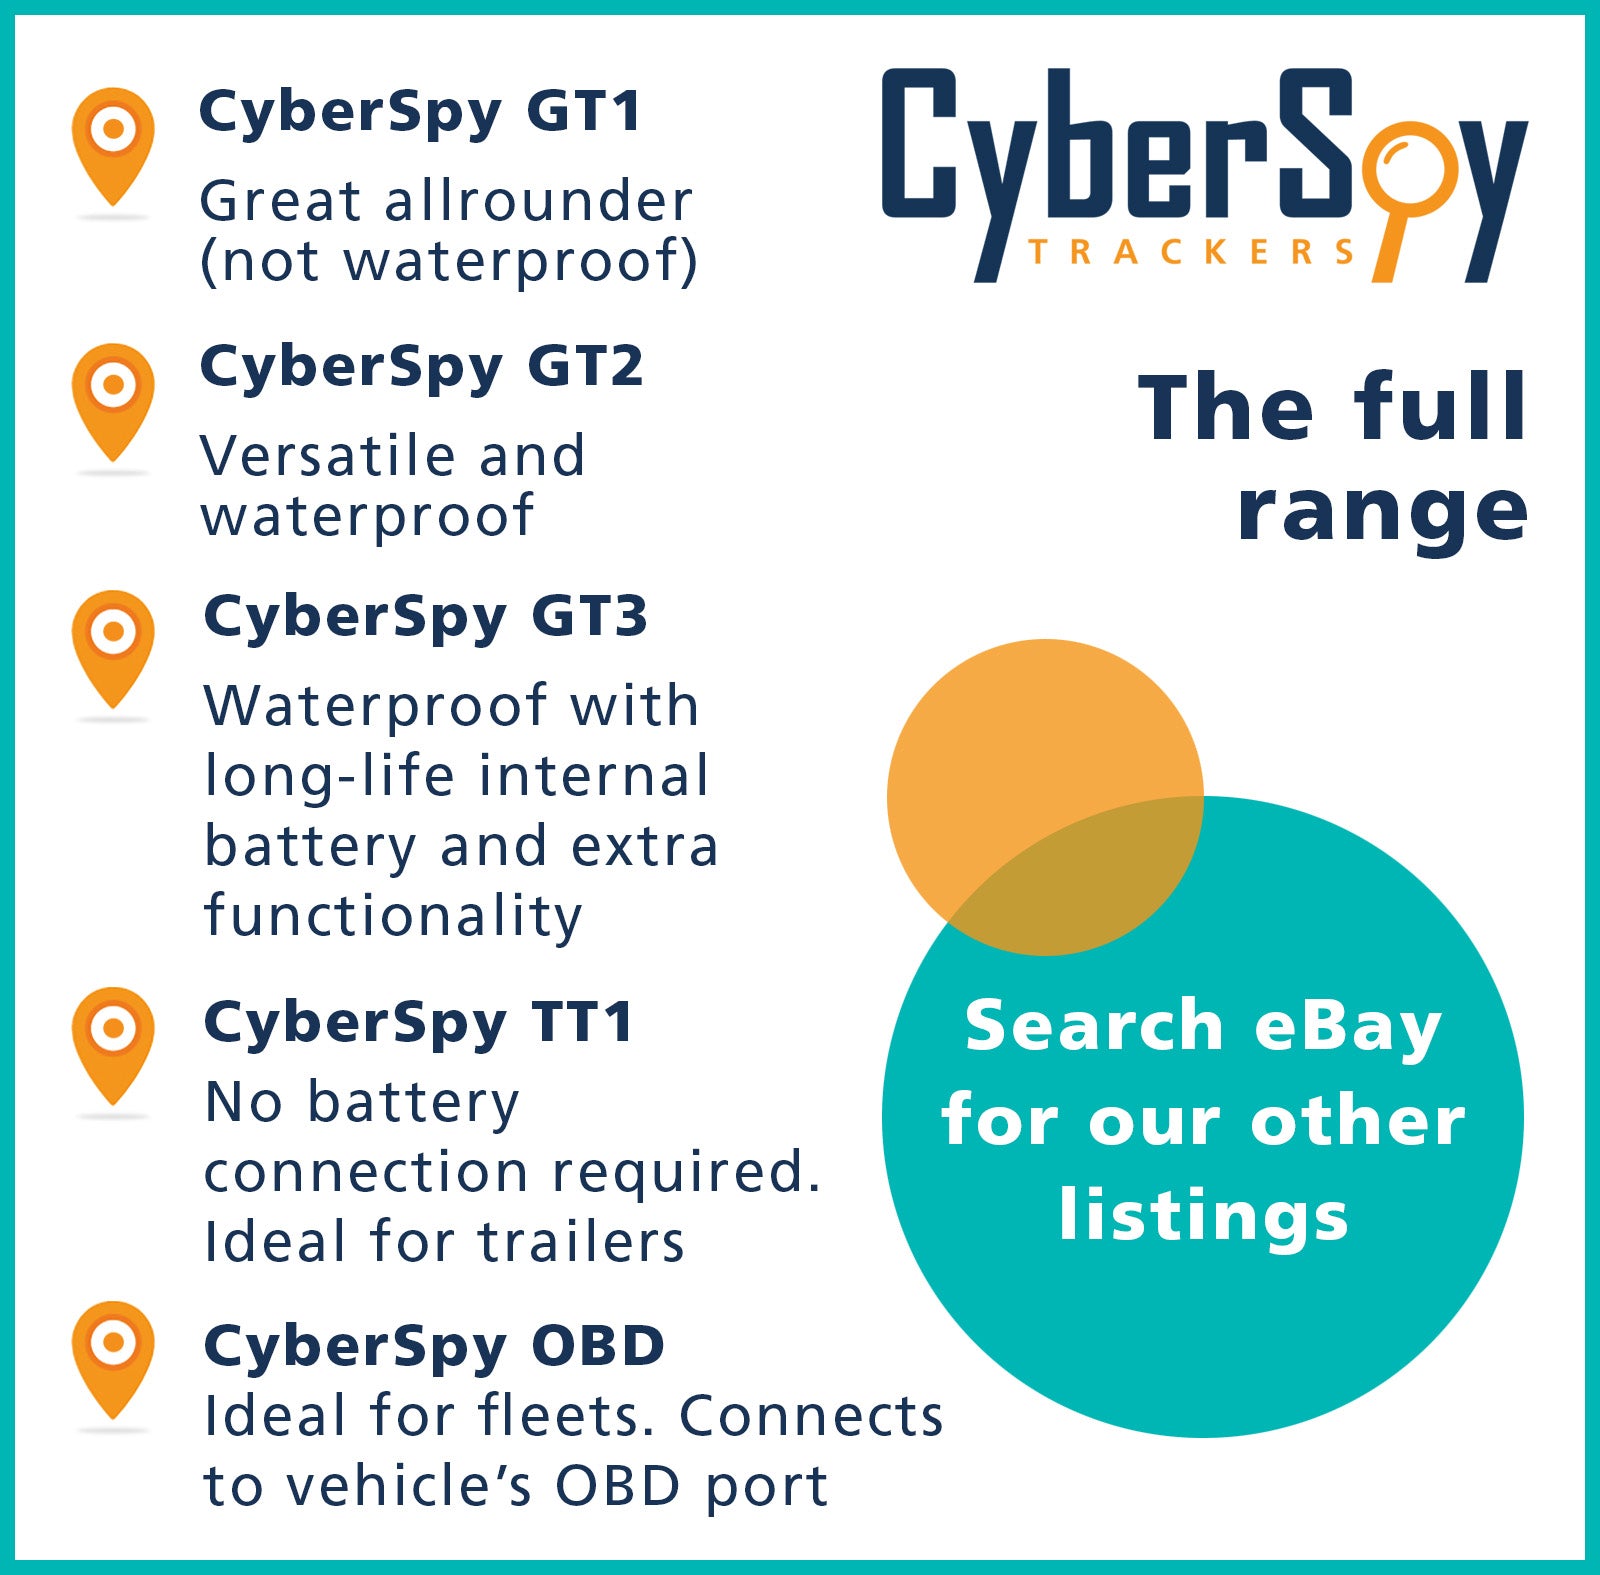 CyberSpy GT2